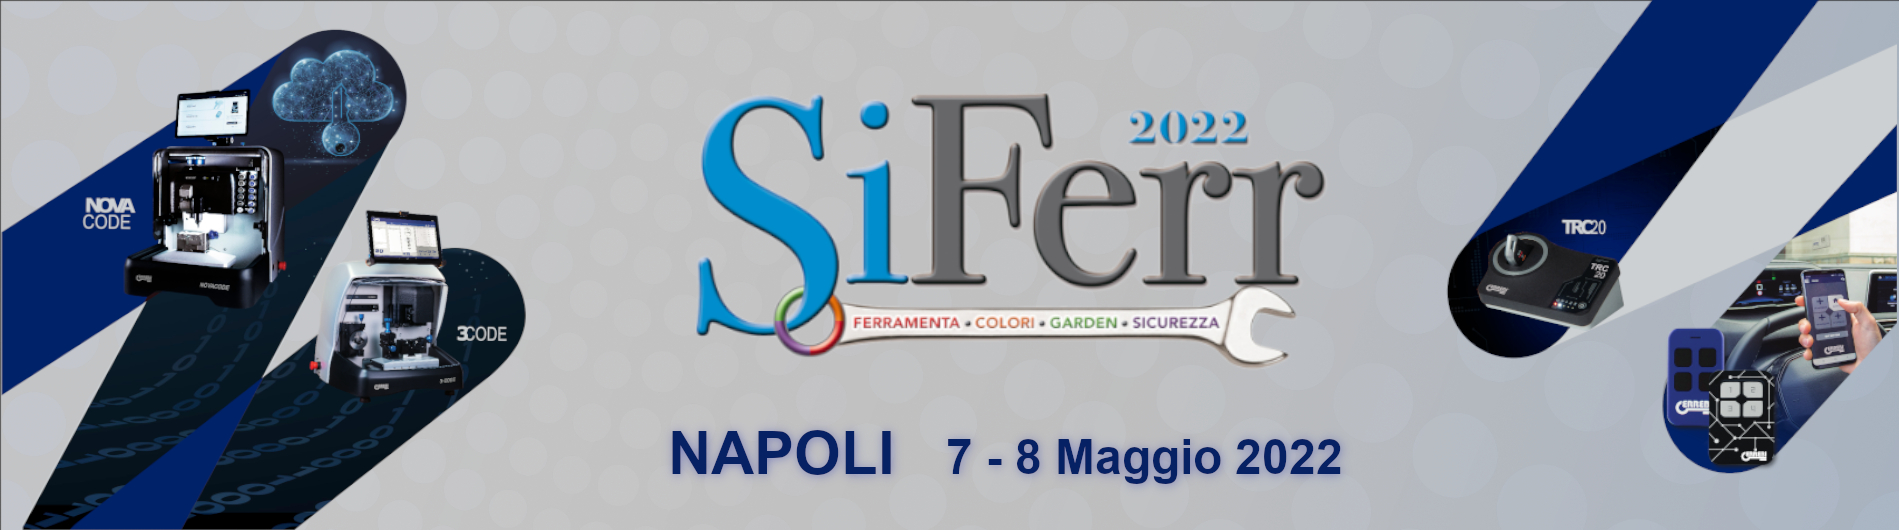 Fiera SiFerr - (Napoli 7-8 maggio 2022)